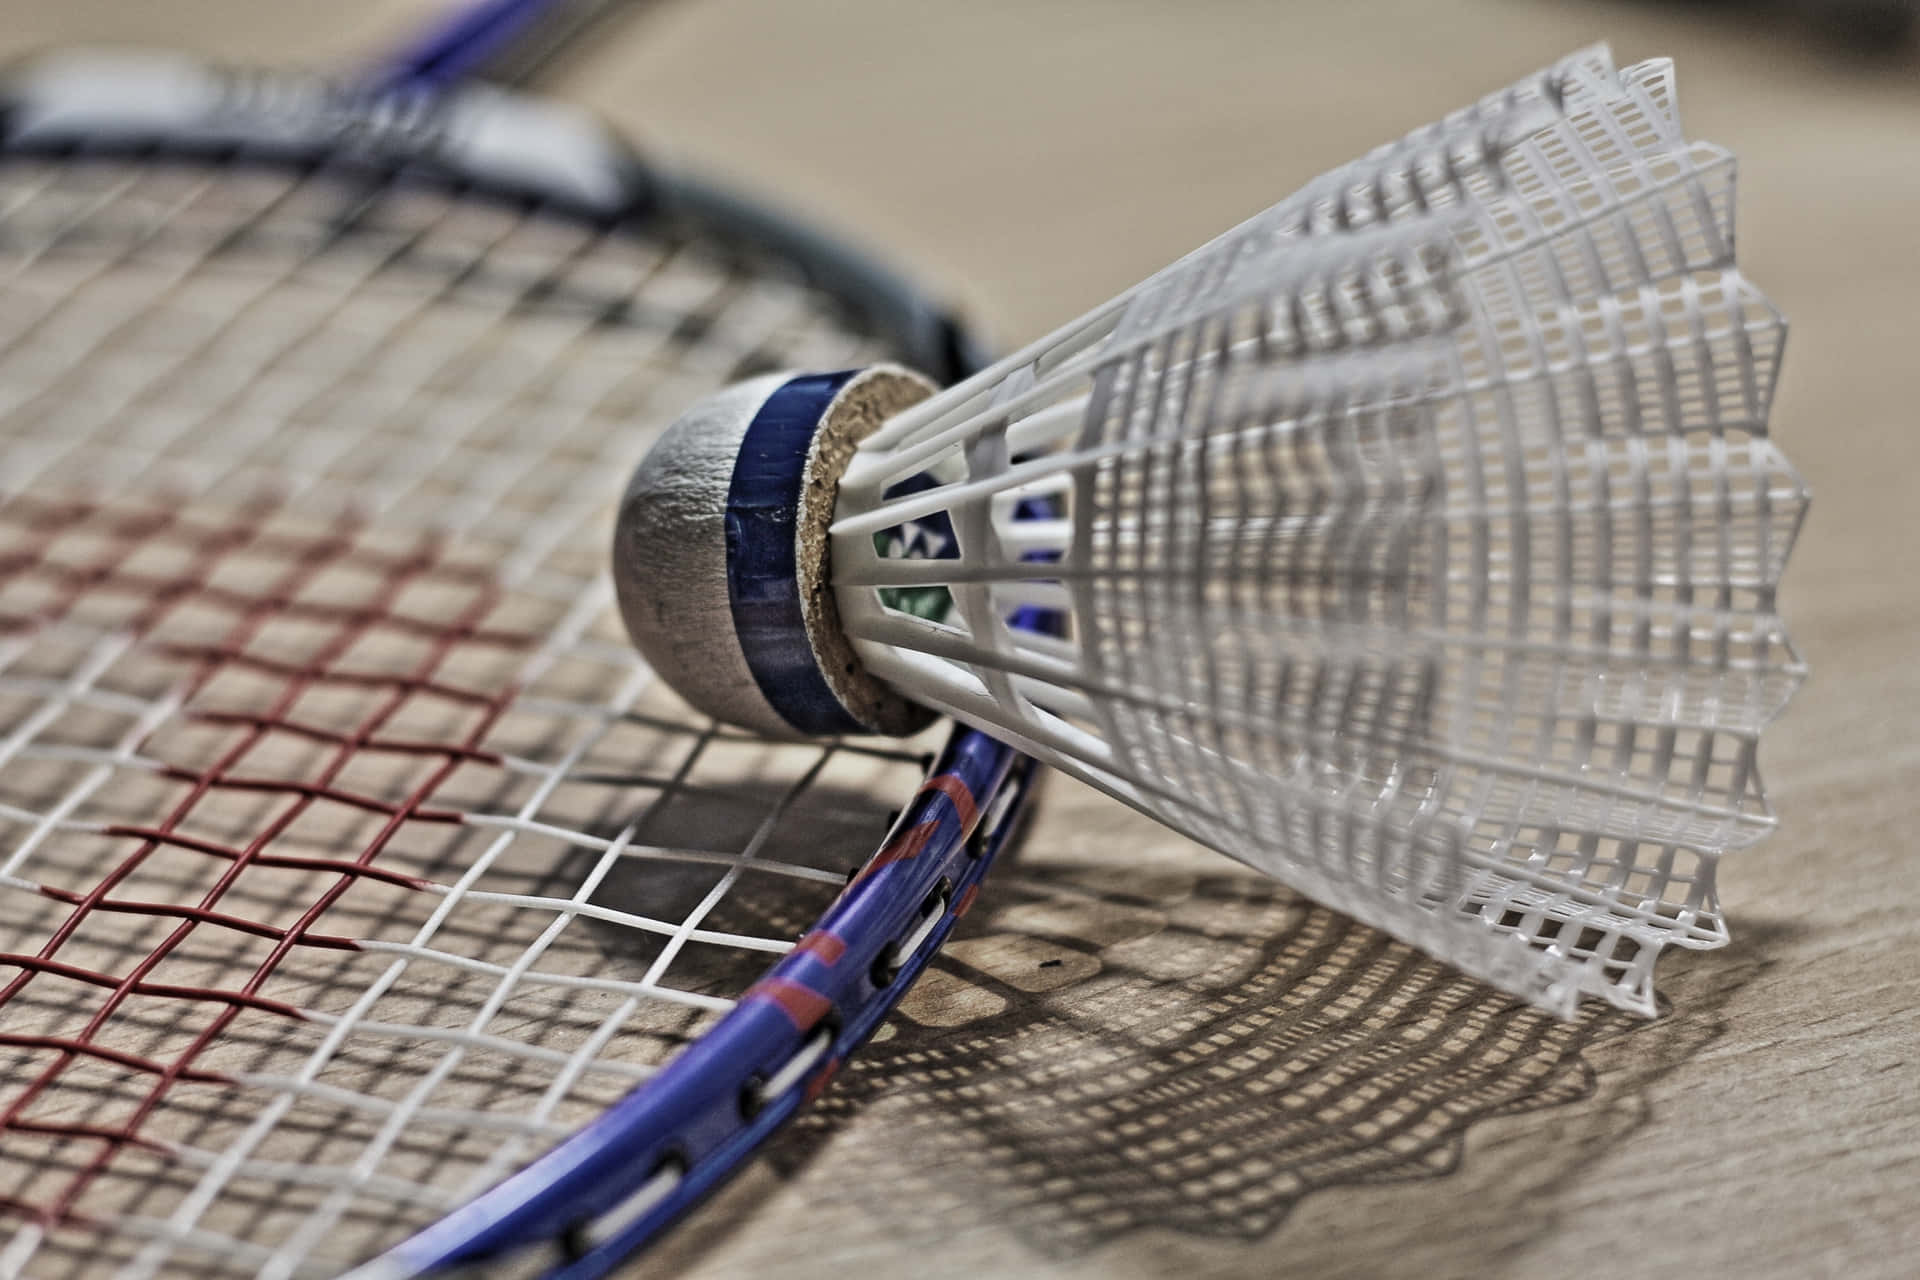 Utveckladina Badmintonfärdigheter Till Fullo På Denna Hd Badmintonbana.